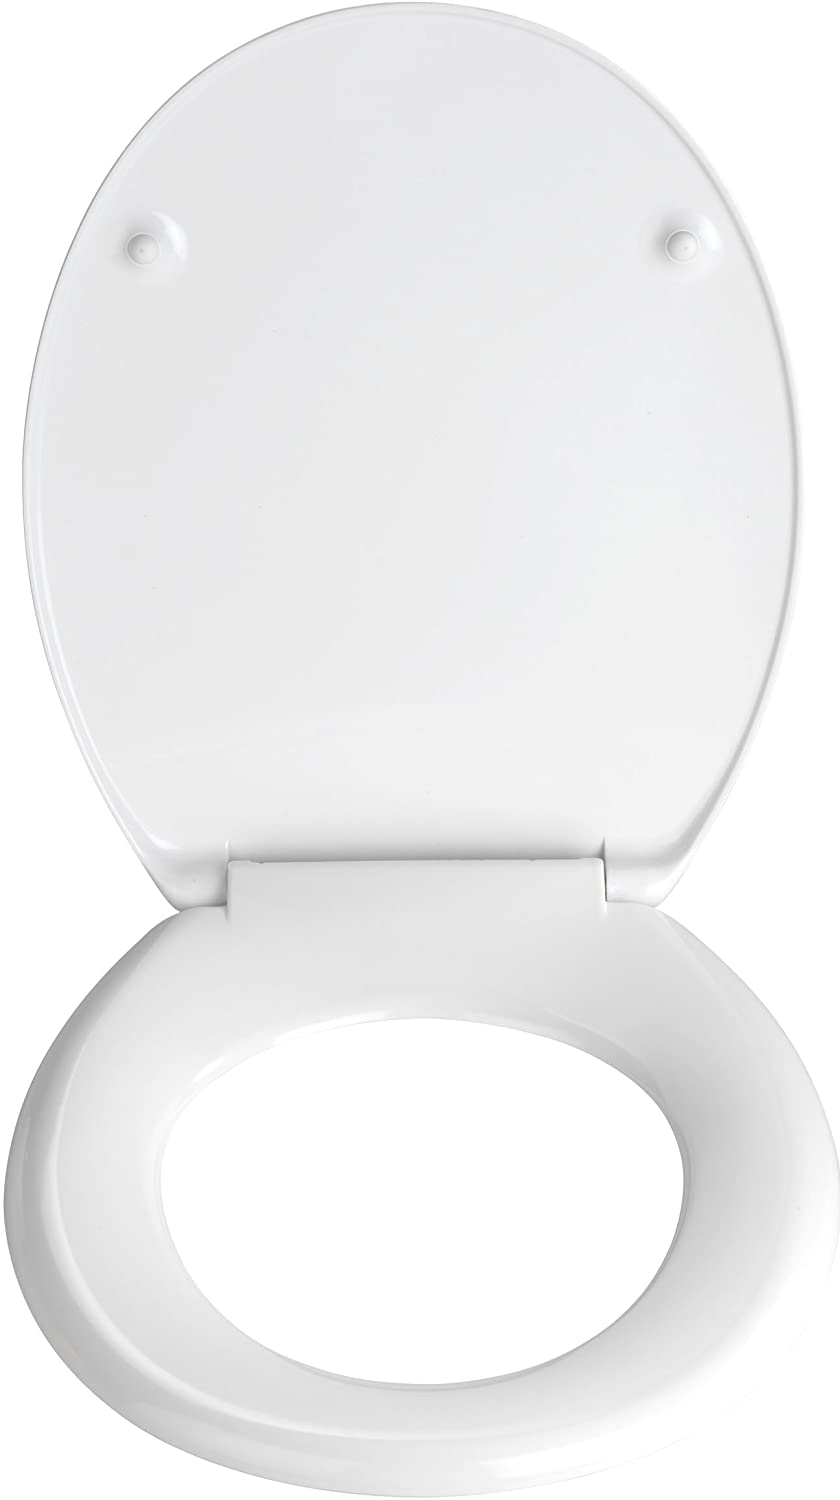 WC-Sitz WC-Häuschen - Antibakterieller Toilettensitz, rostfreie Edelstahlbefestigung, Duroplast, 37.5 x 45 cm, Mehrfarbig